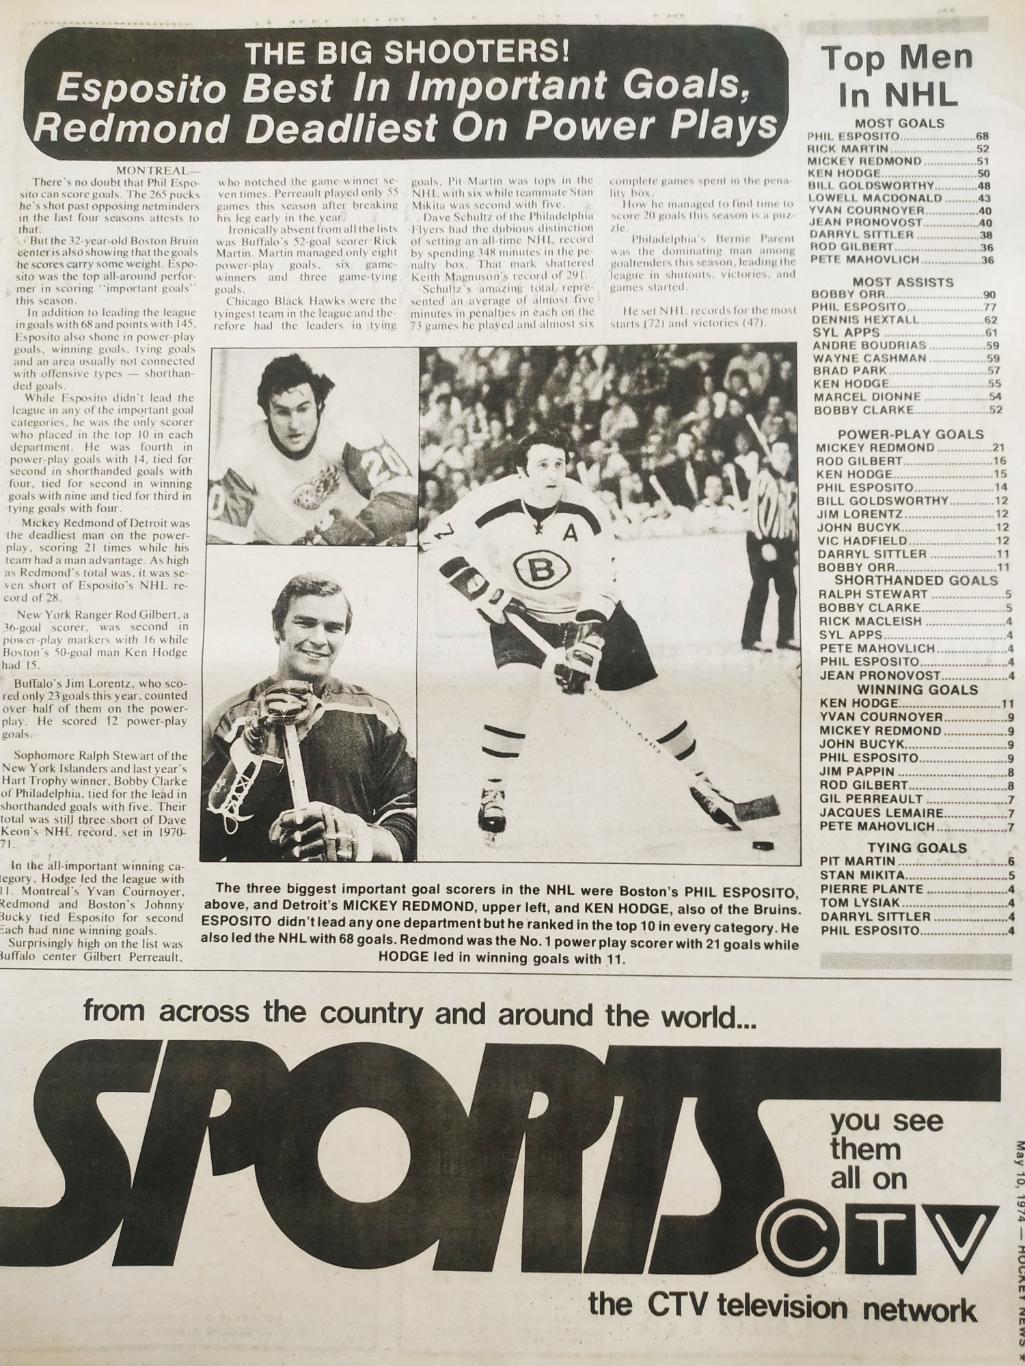 ХОККЕЙ ЖУРНАЛ ЕЖЕНЕДЕЛЬНИК НХЛ НОВОСТИ ХОККЕЯ MAY.10 1974 NHL THE HOCKEY NEWS 2